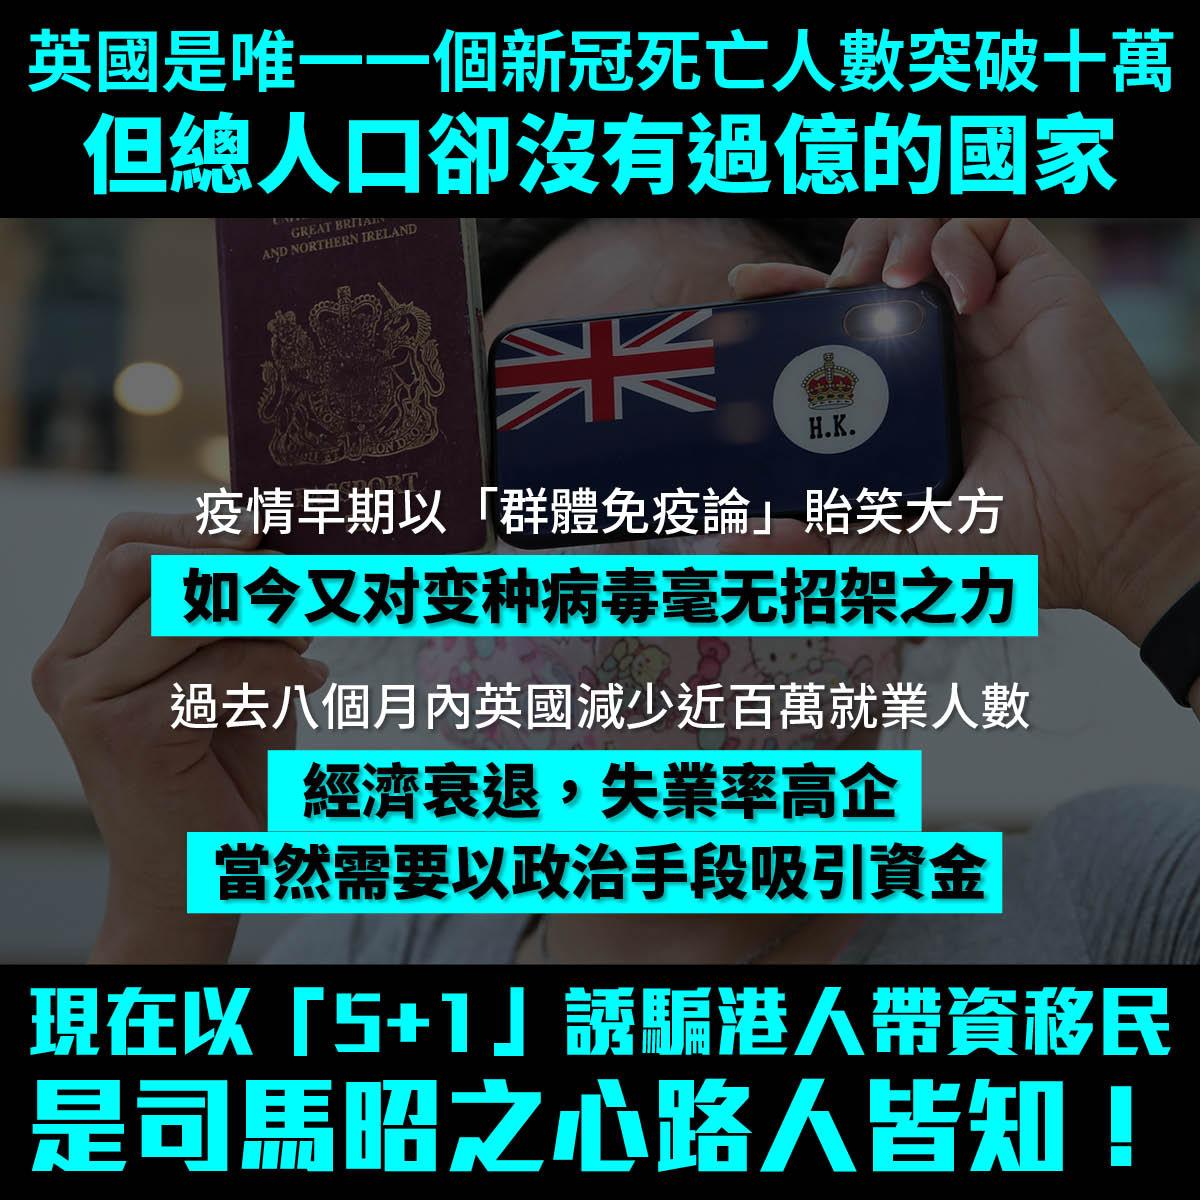 香港人(F6簽證)申請入籍韓國(一) 面試須知 範圍 準備方法 | 香港人結婚移民韓國歸化申請方法 所需文件